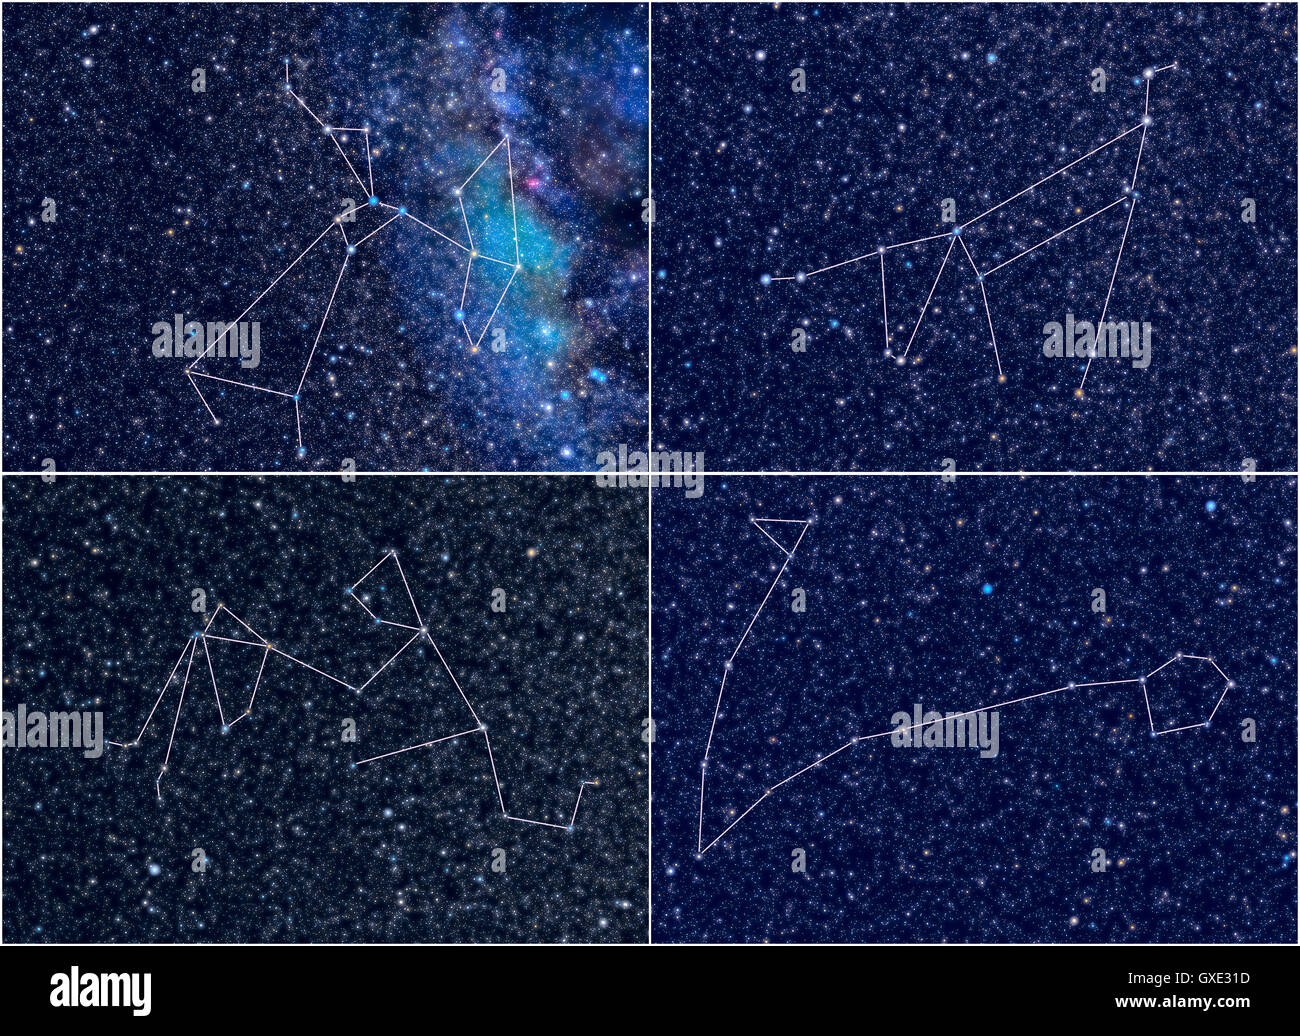 L'espace univers / Astronomie / astrologie abstract background / contexte illustration : quatre constellations de zodiaque. Banque D'Images